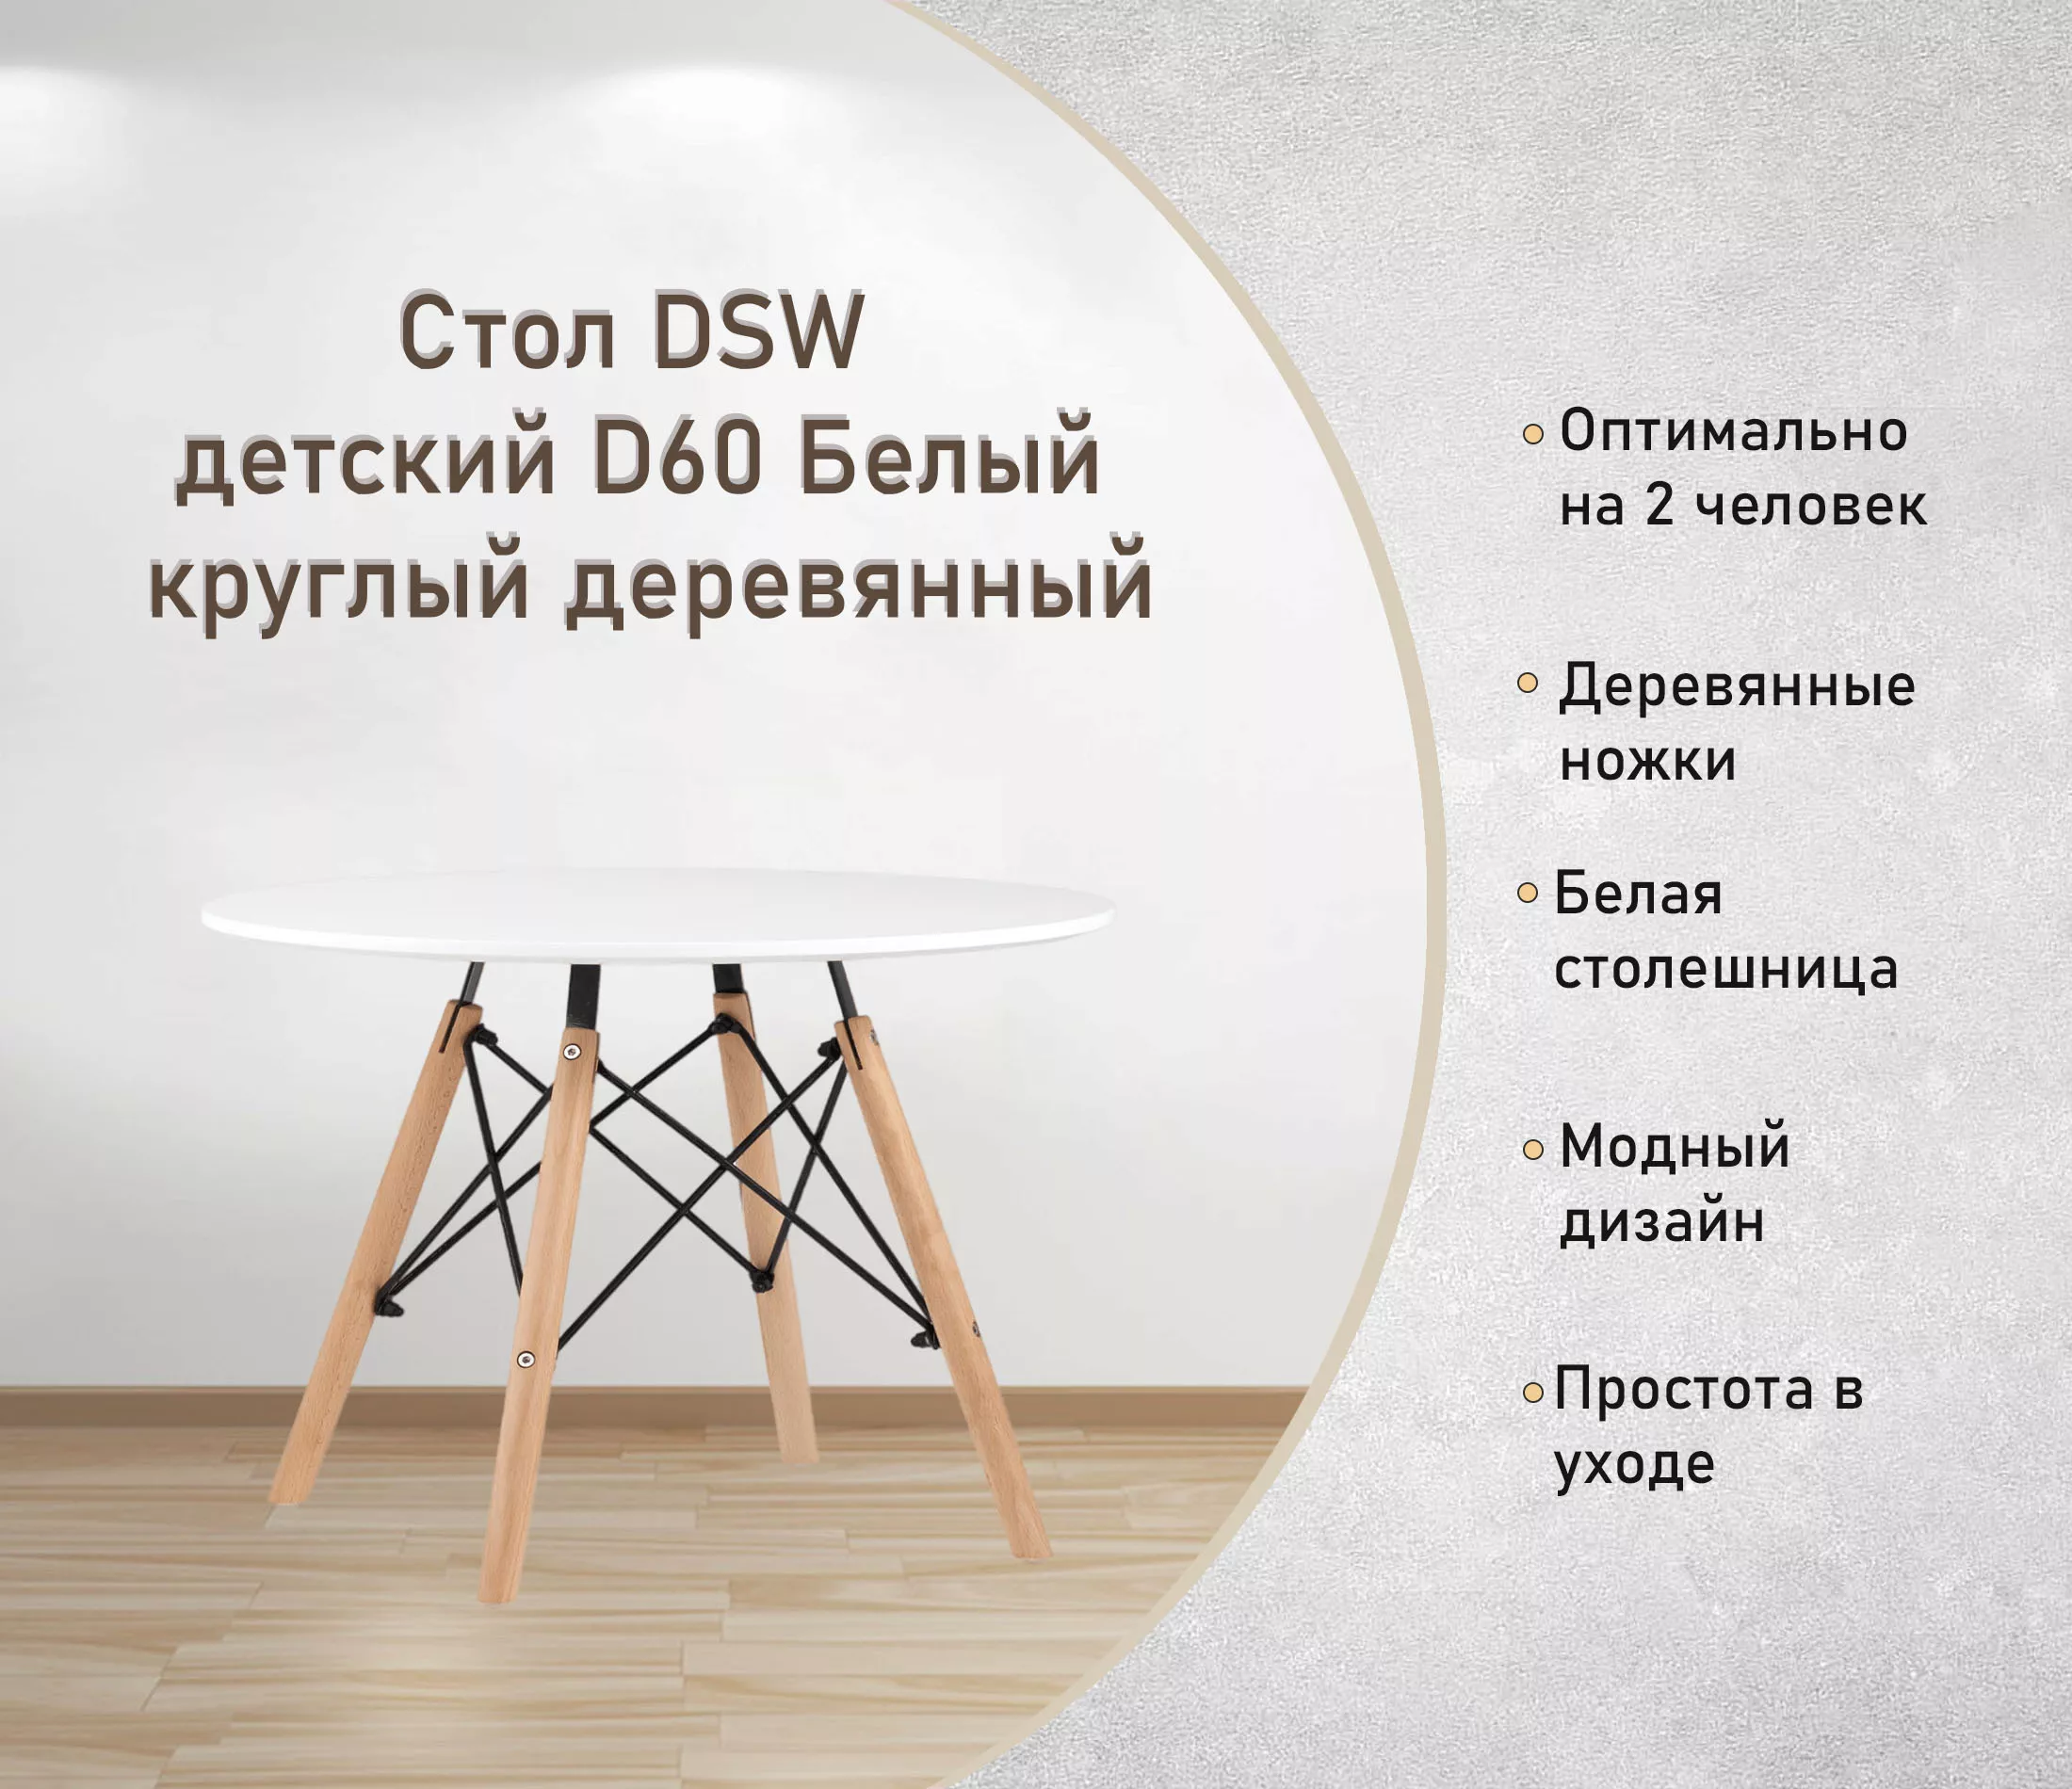 Стол DSW детский D60 Белый круглый деревянный